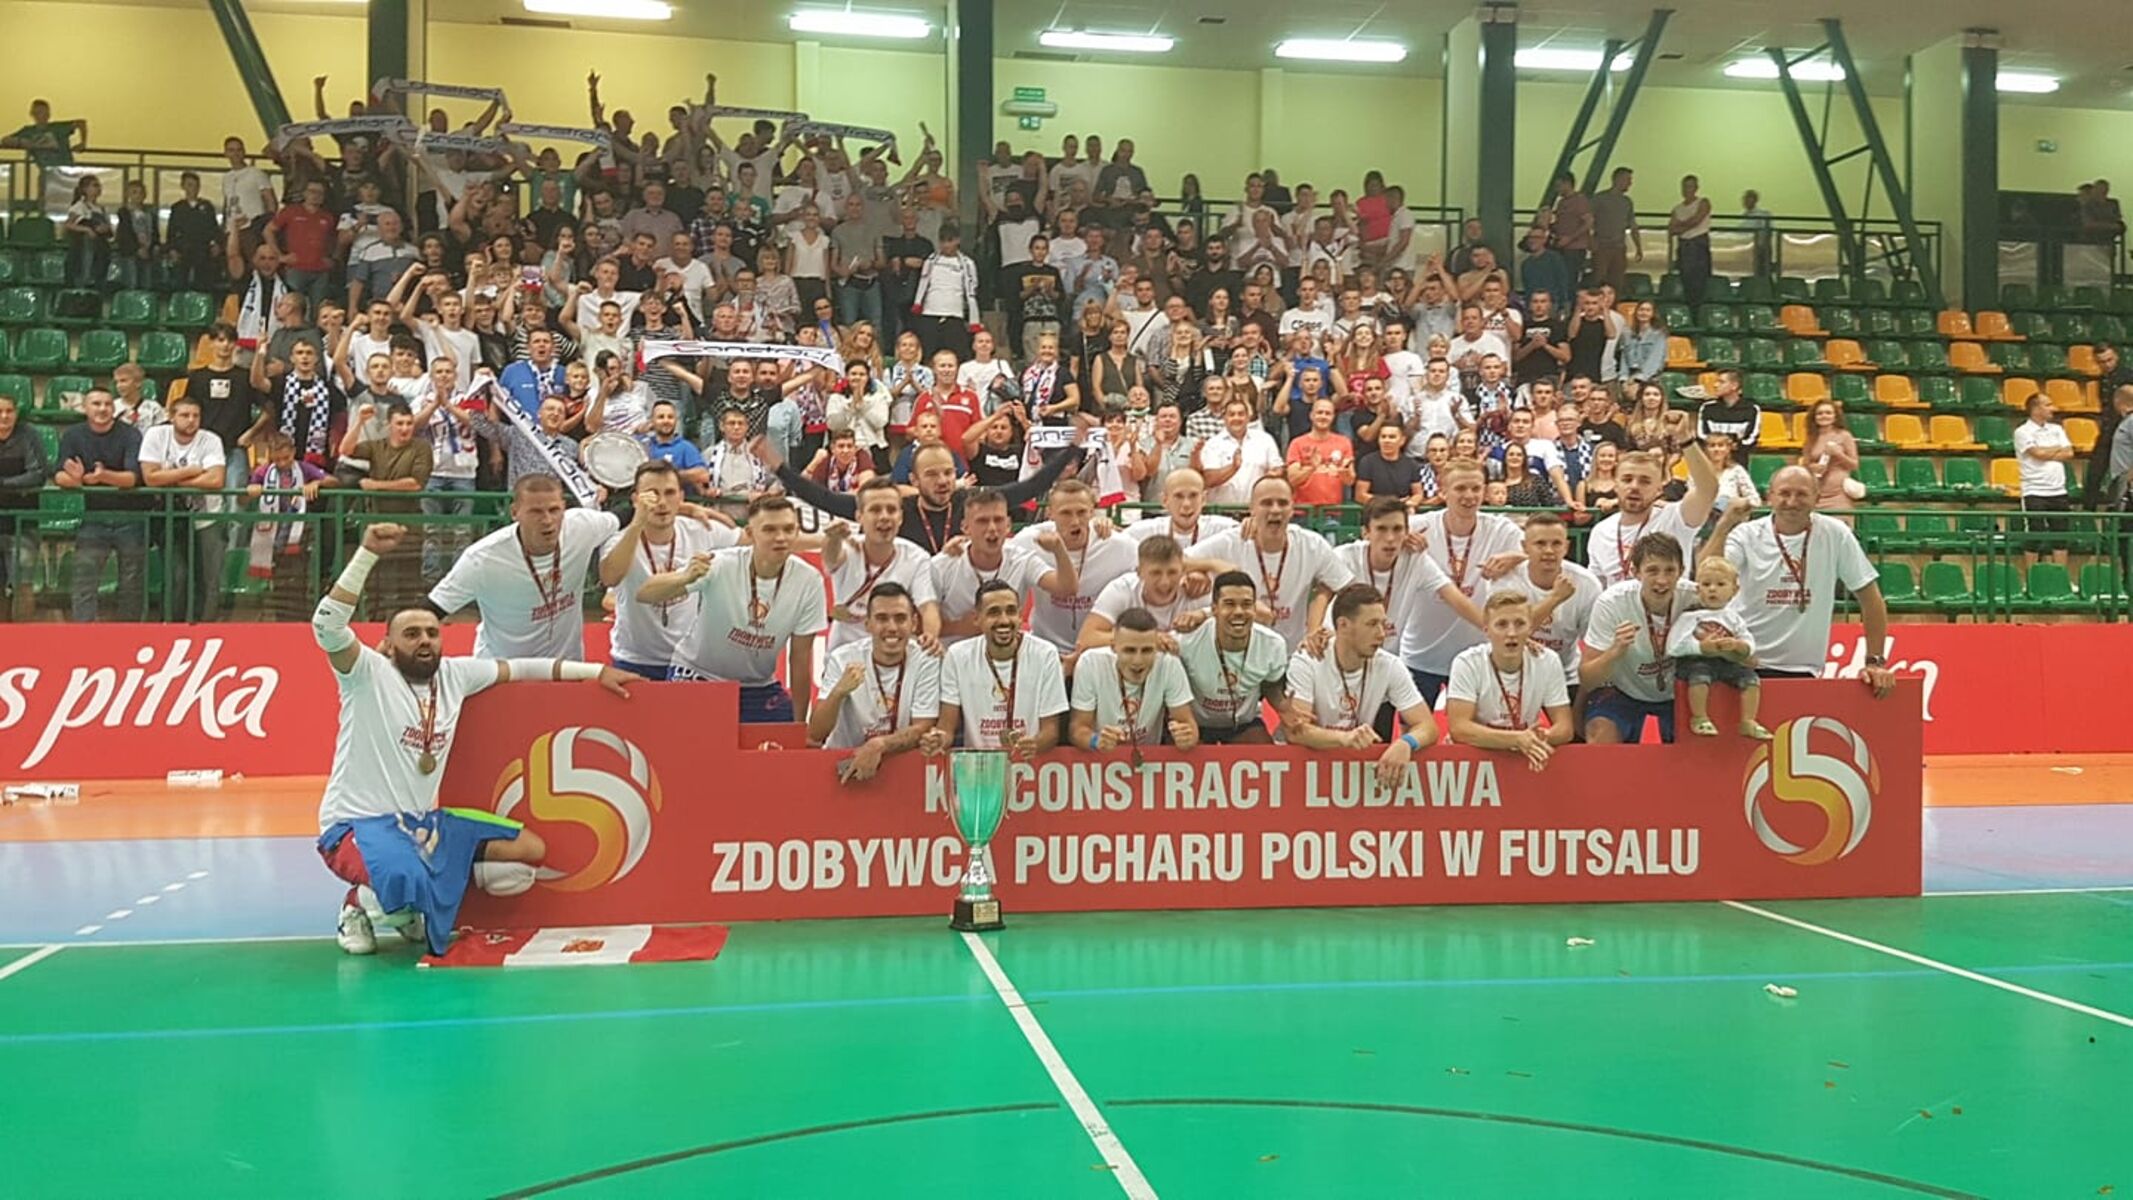 Constract Lubawa zdobywcą futsalowego Pucharu Polski. Fot. wmzpn.pl